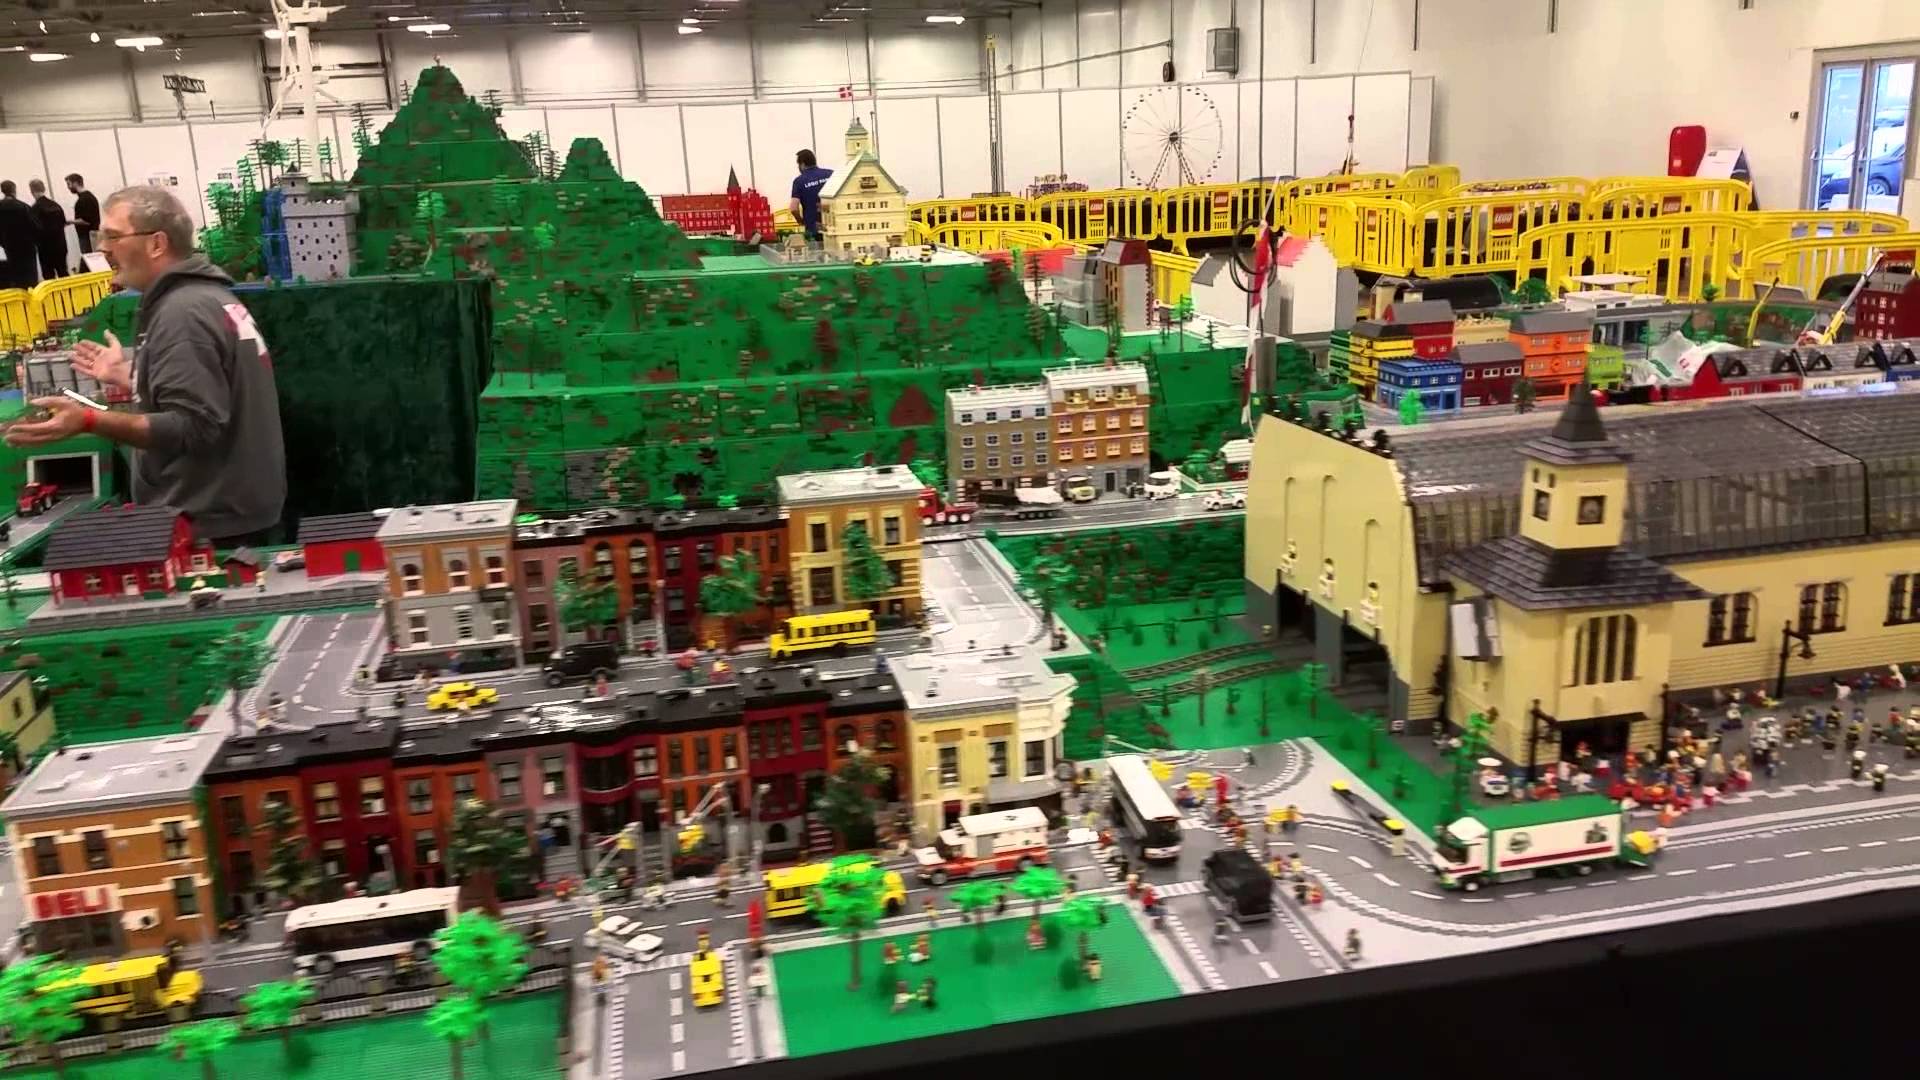 Lego world 2015 fan zone - YouTube